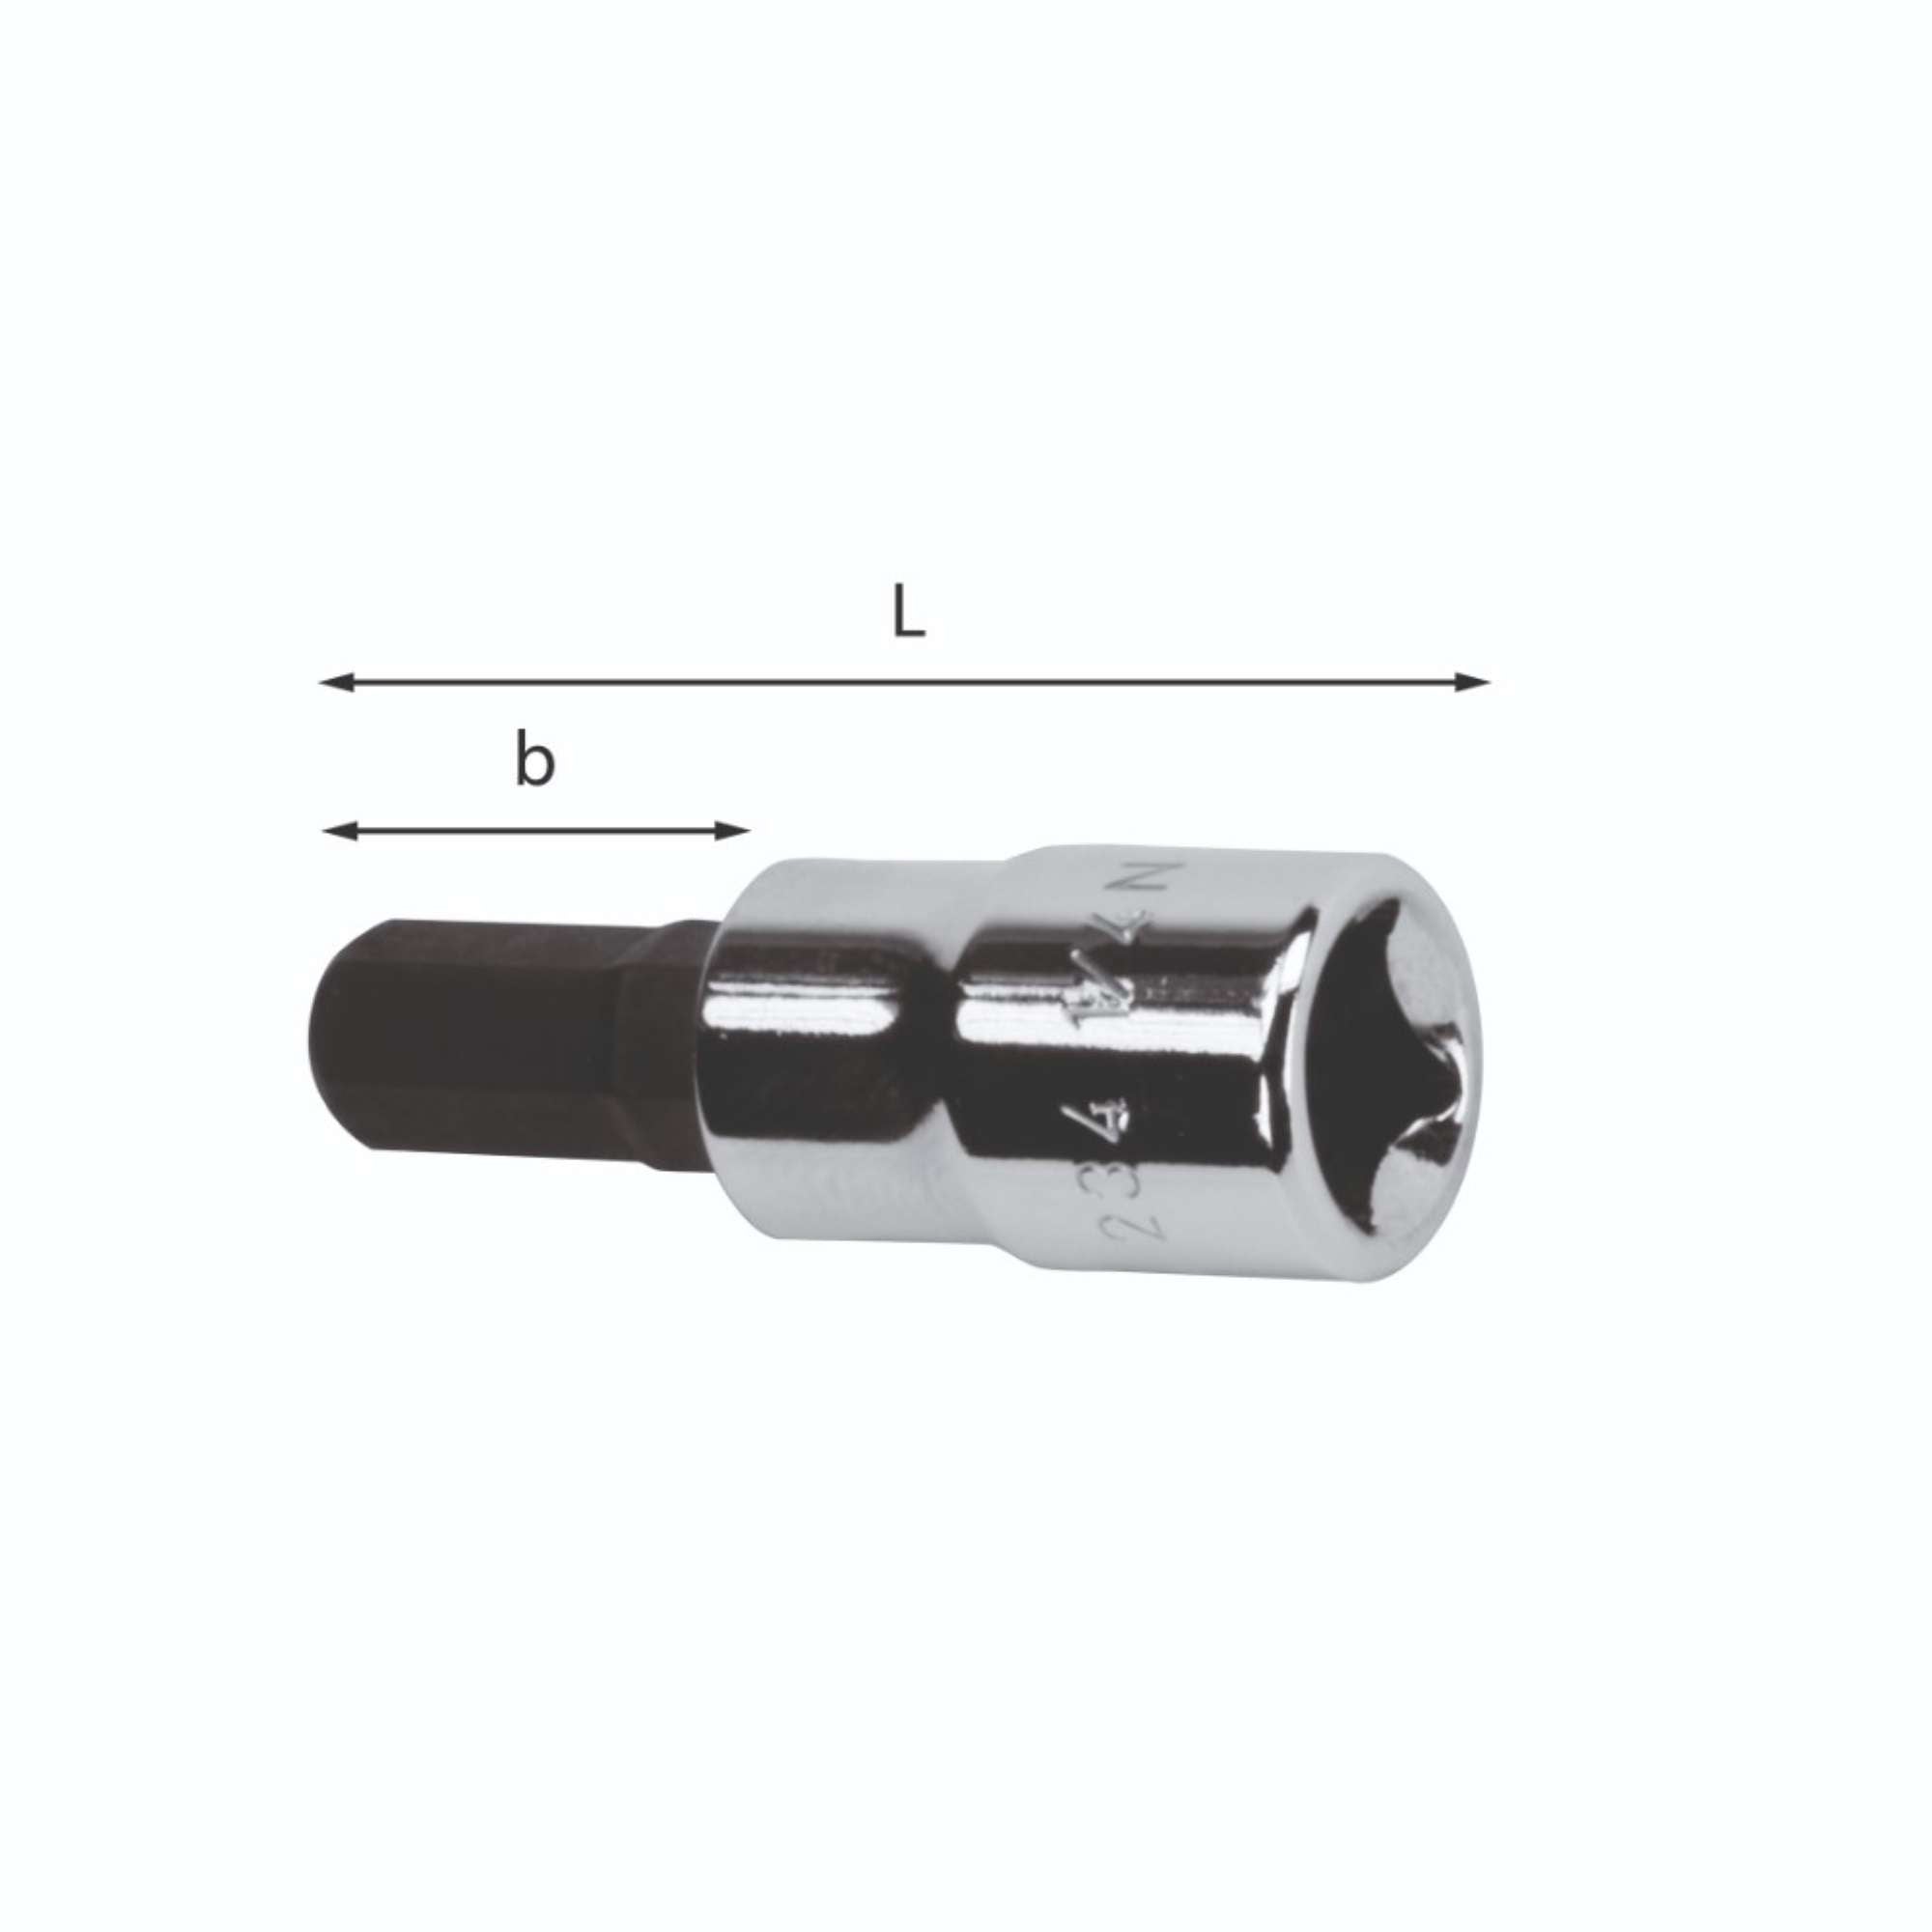 Socket wrench for hex socket screws - Usag 234 1/4N